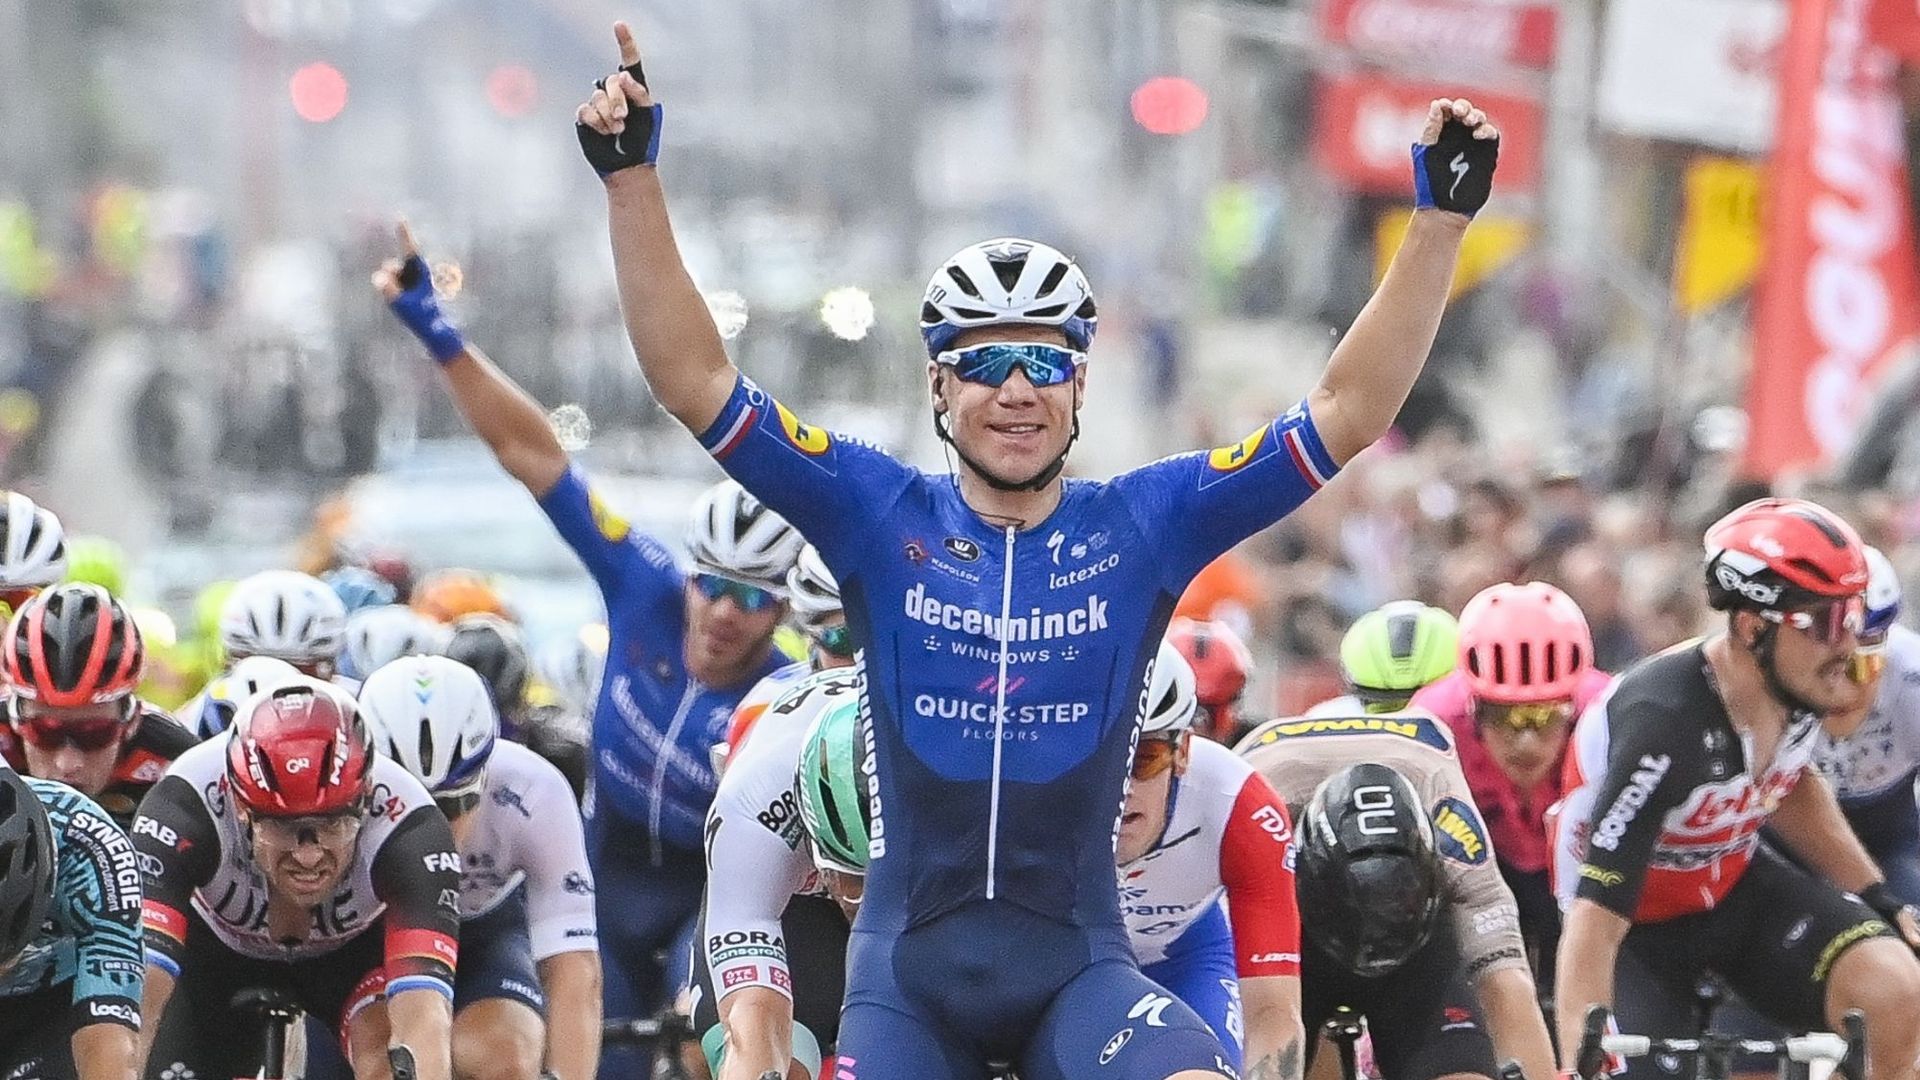 Cyclisme : Fabio Jakobsen, vainqueur en 2021 de l’Eurométropole Tour désormais rebaptisé 'Circuit franco-belge'. Les organisateurs du Cazeau Pédale de Templeuve ont annoncé vendredi à Tournai le partenariat nouveau avec la société Golazo, qui devient co-o